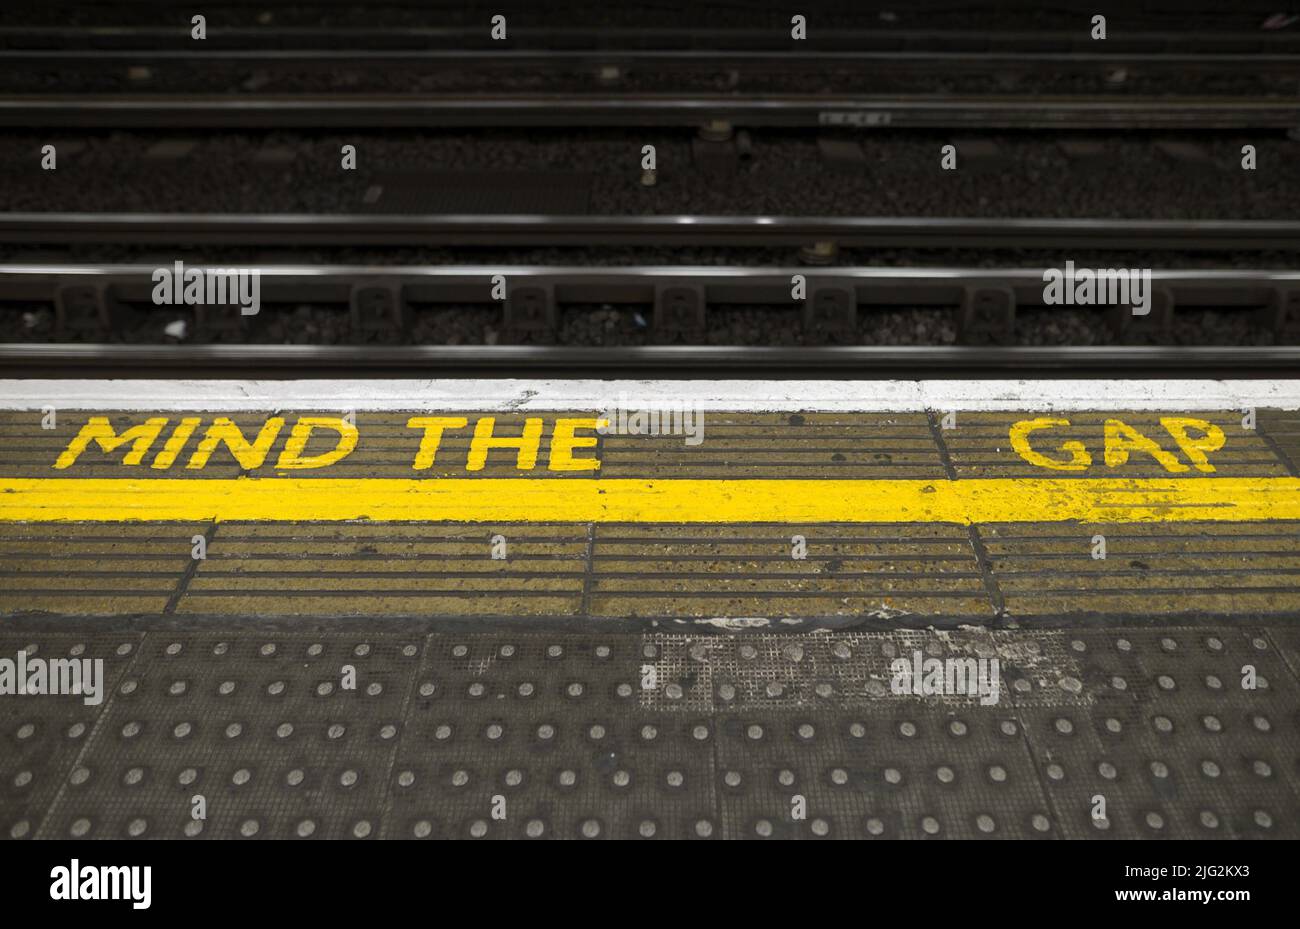 Londra, Inghilterra, Regno Unito. Piattaforma London Undergound. "Annogiare il gioco" - con un ampio gioco Foto Stock